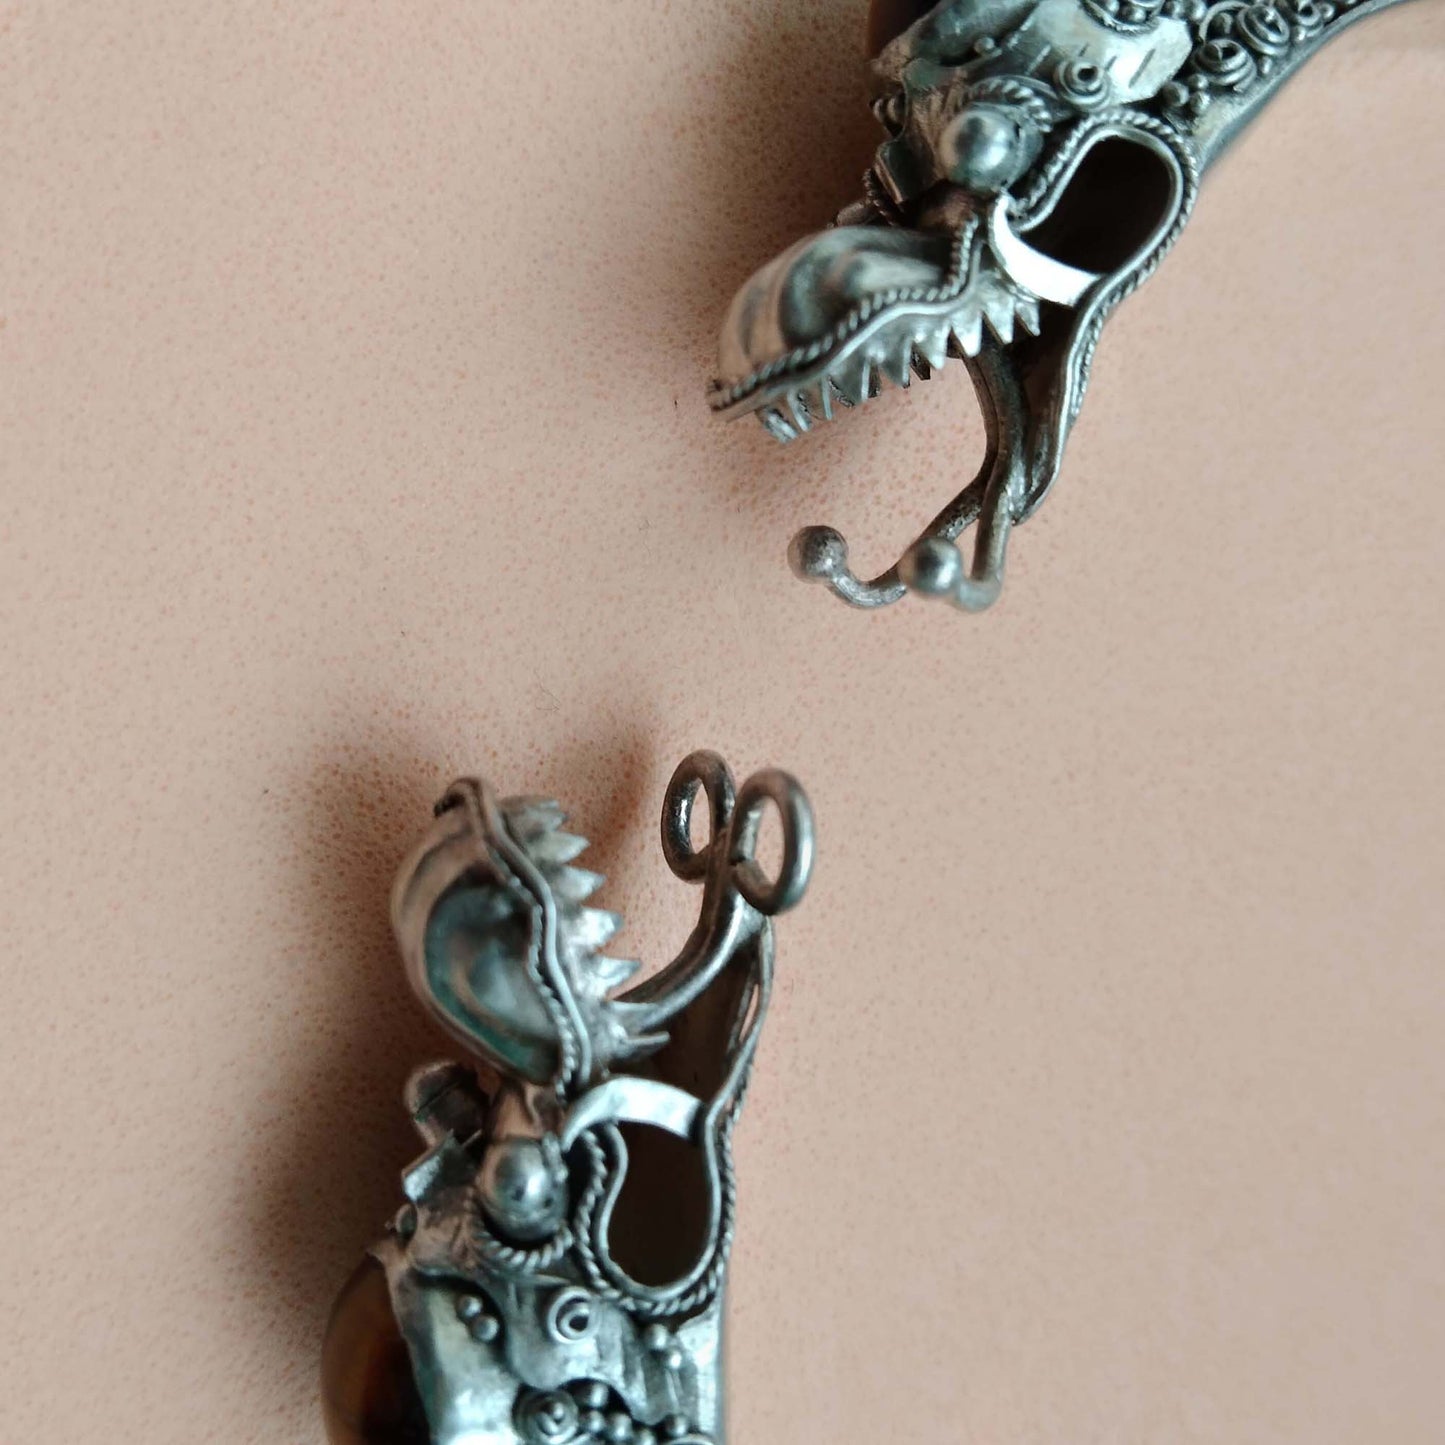 950 Silver Double Dragon Bangle, Tigers Eye Stone Bracelet, Vintage Artisan Jewelry Bali